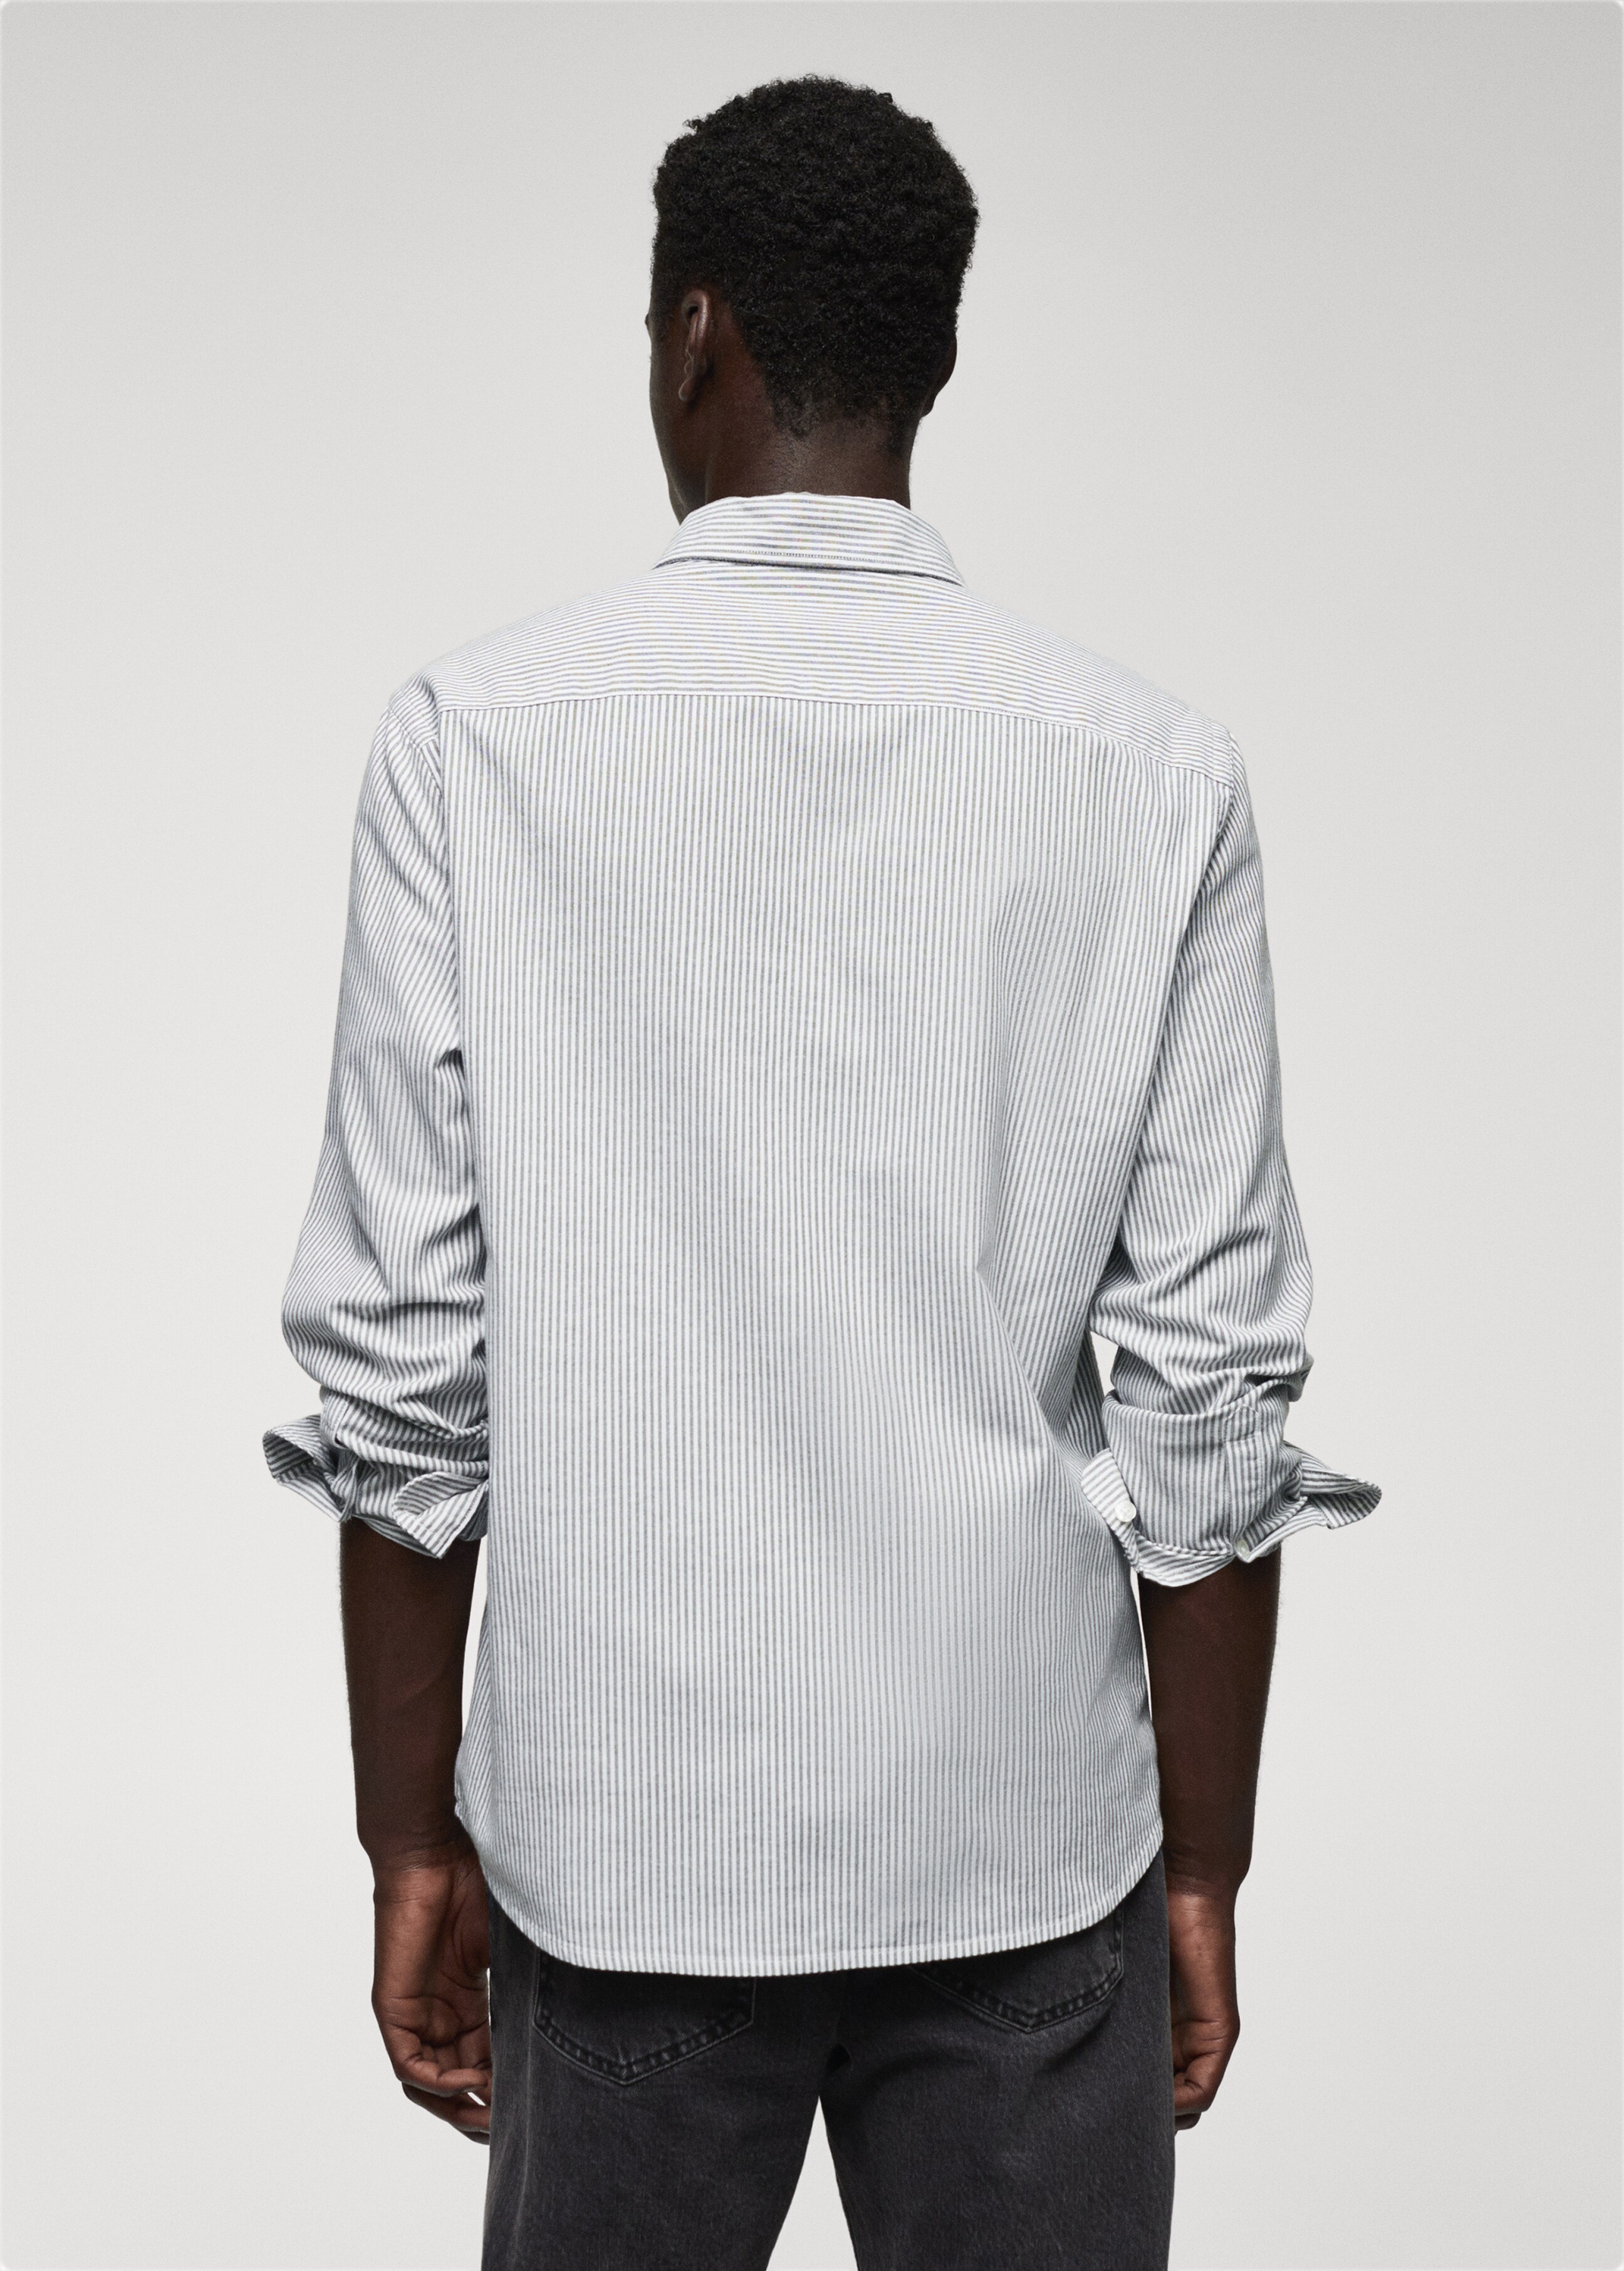 Camisa 100% algodón rayas kodak - Reverso del artículo